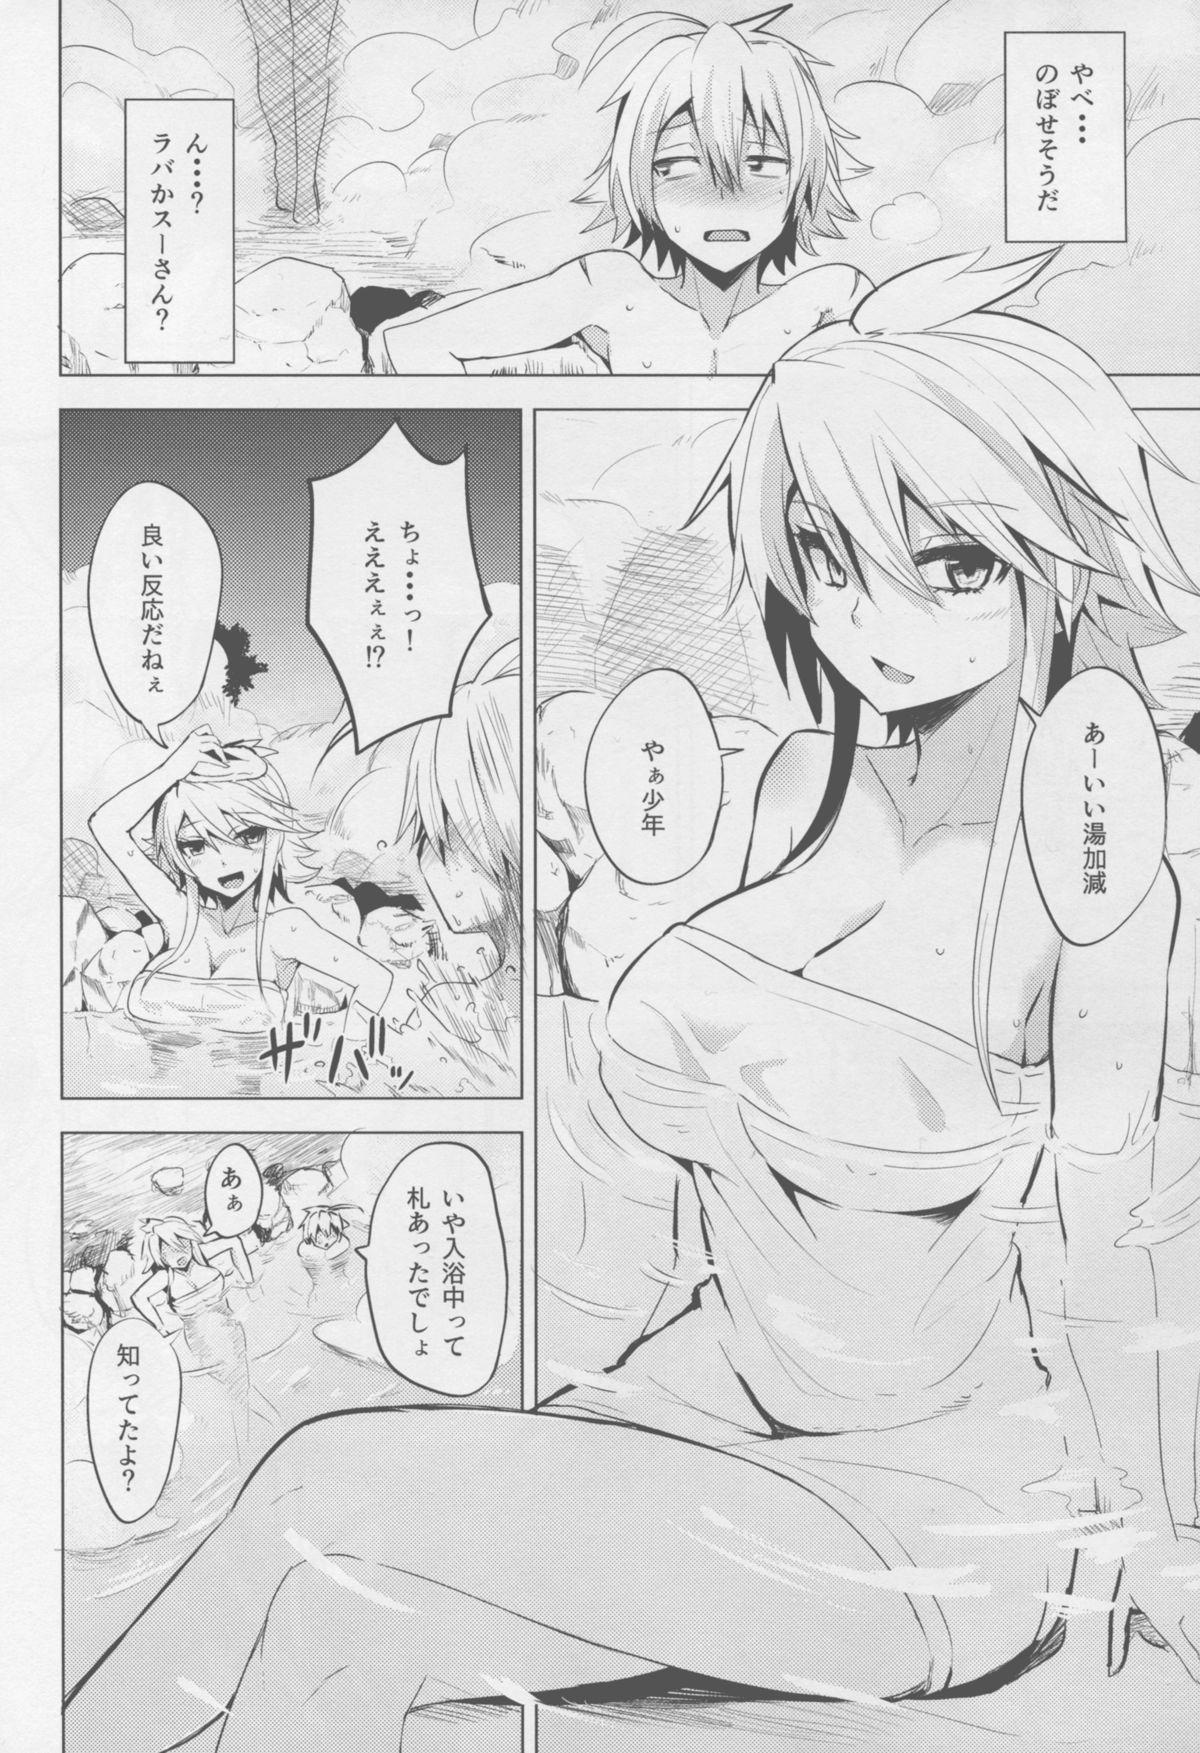 Banheiro Shishi Ane - Akame ga kill Gostosa - Page 8